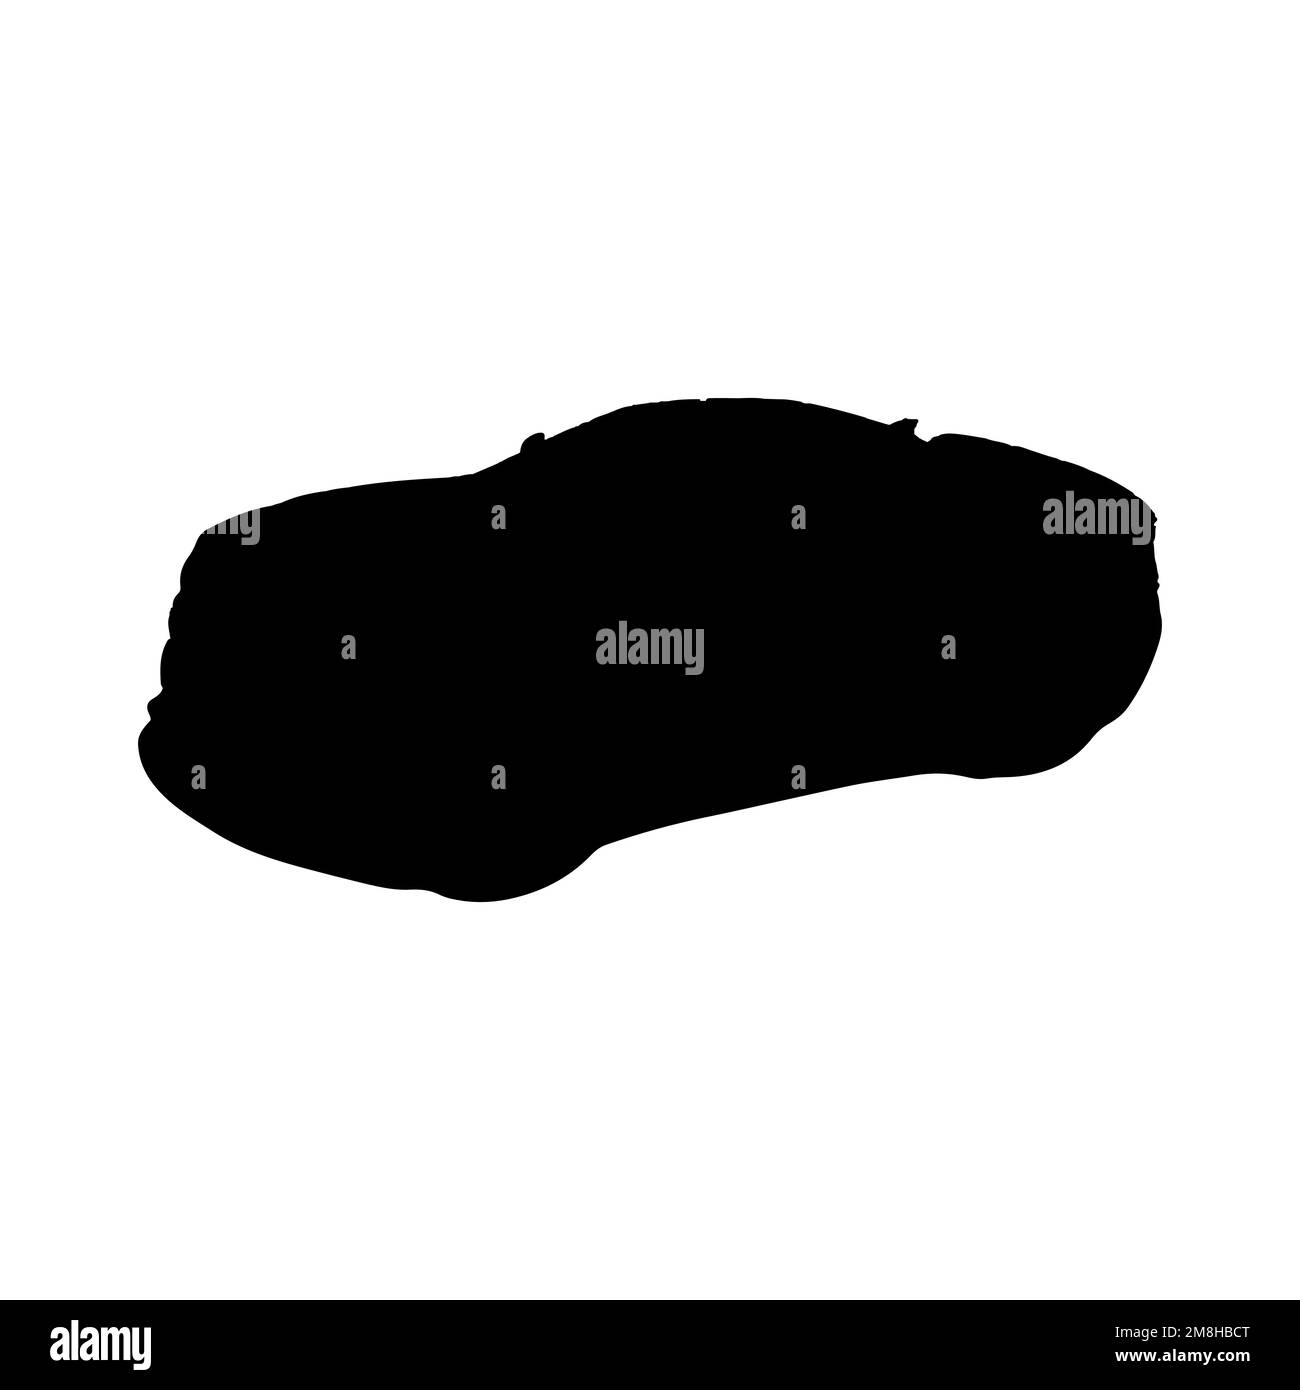 Marca de autos de lujo Imágenes vectoriales de stock - Página 2 - Alamy